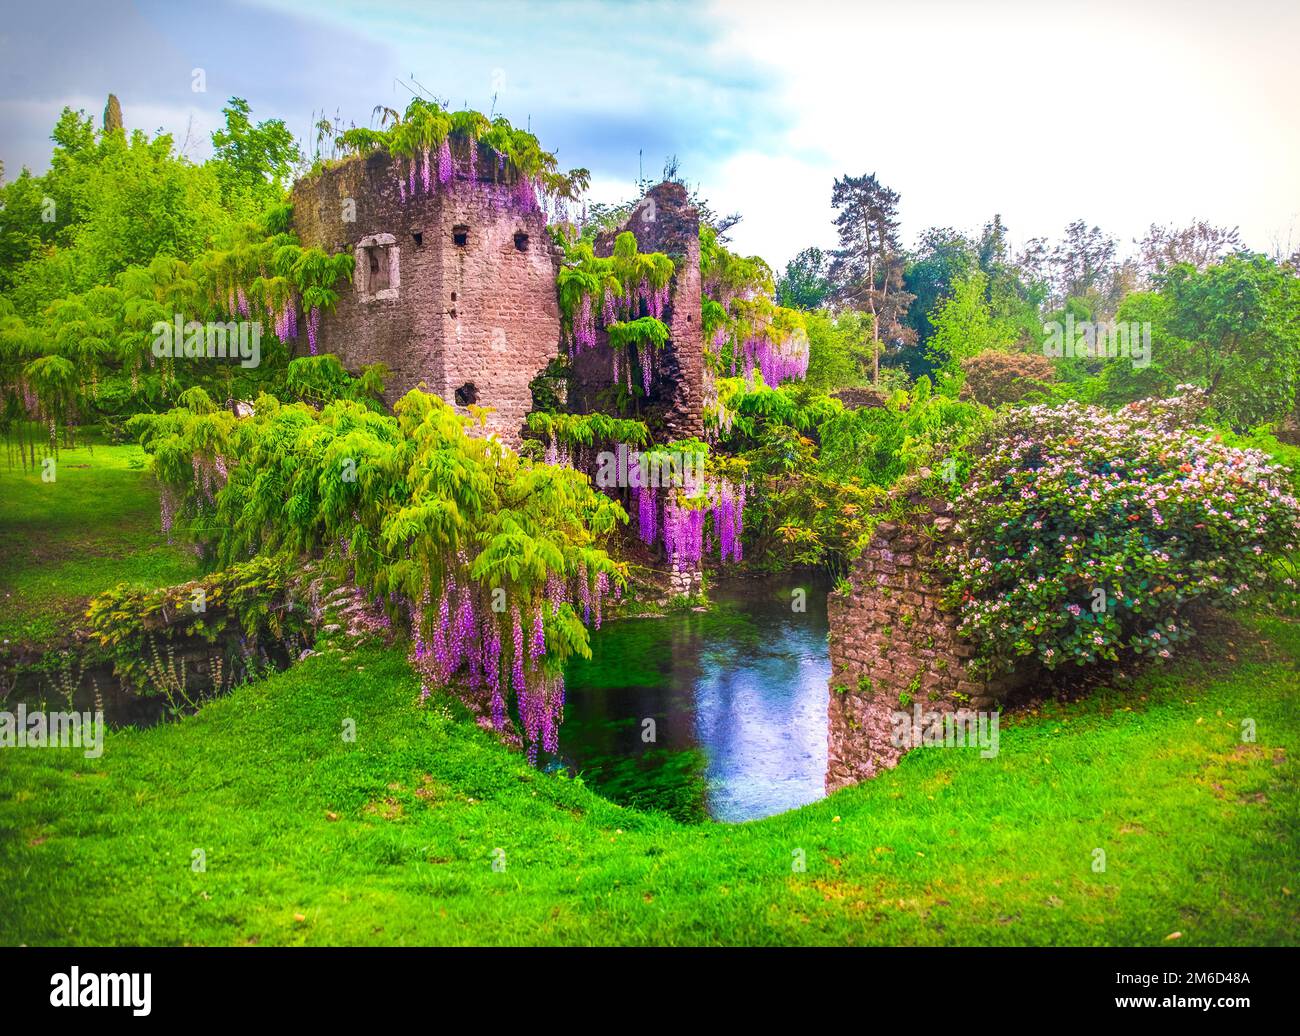 Glicine fiorisce nel giardino delle fate di ninfa in Italia - torre medievale rovina circondata dal fiume Foto Stock